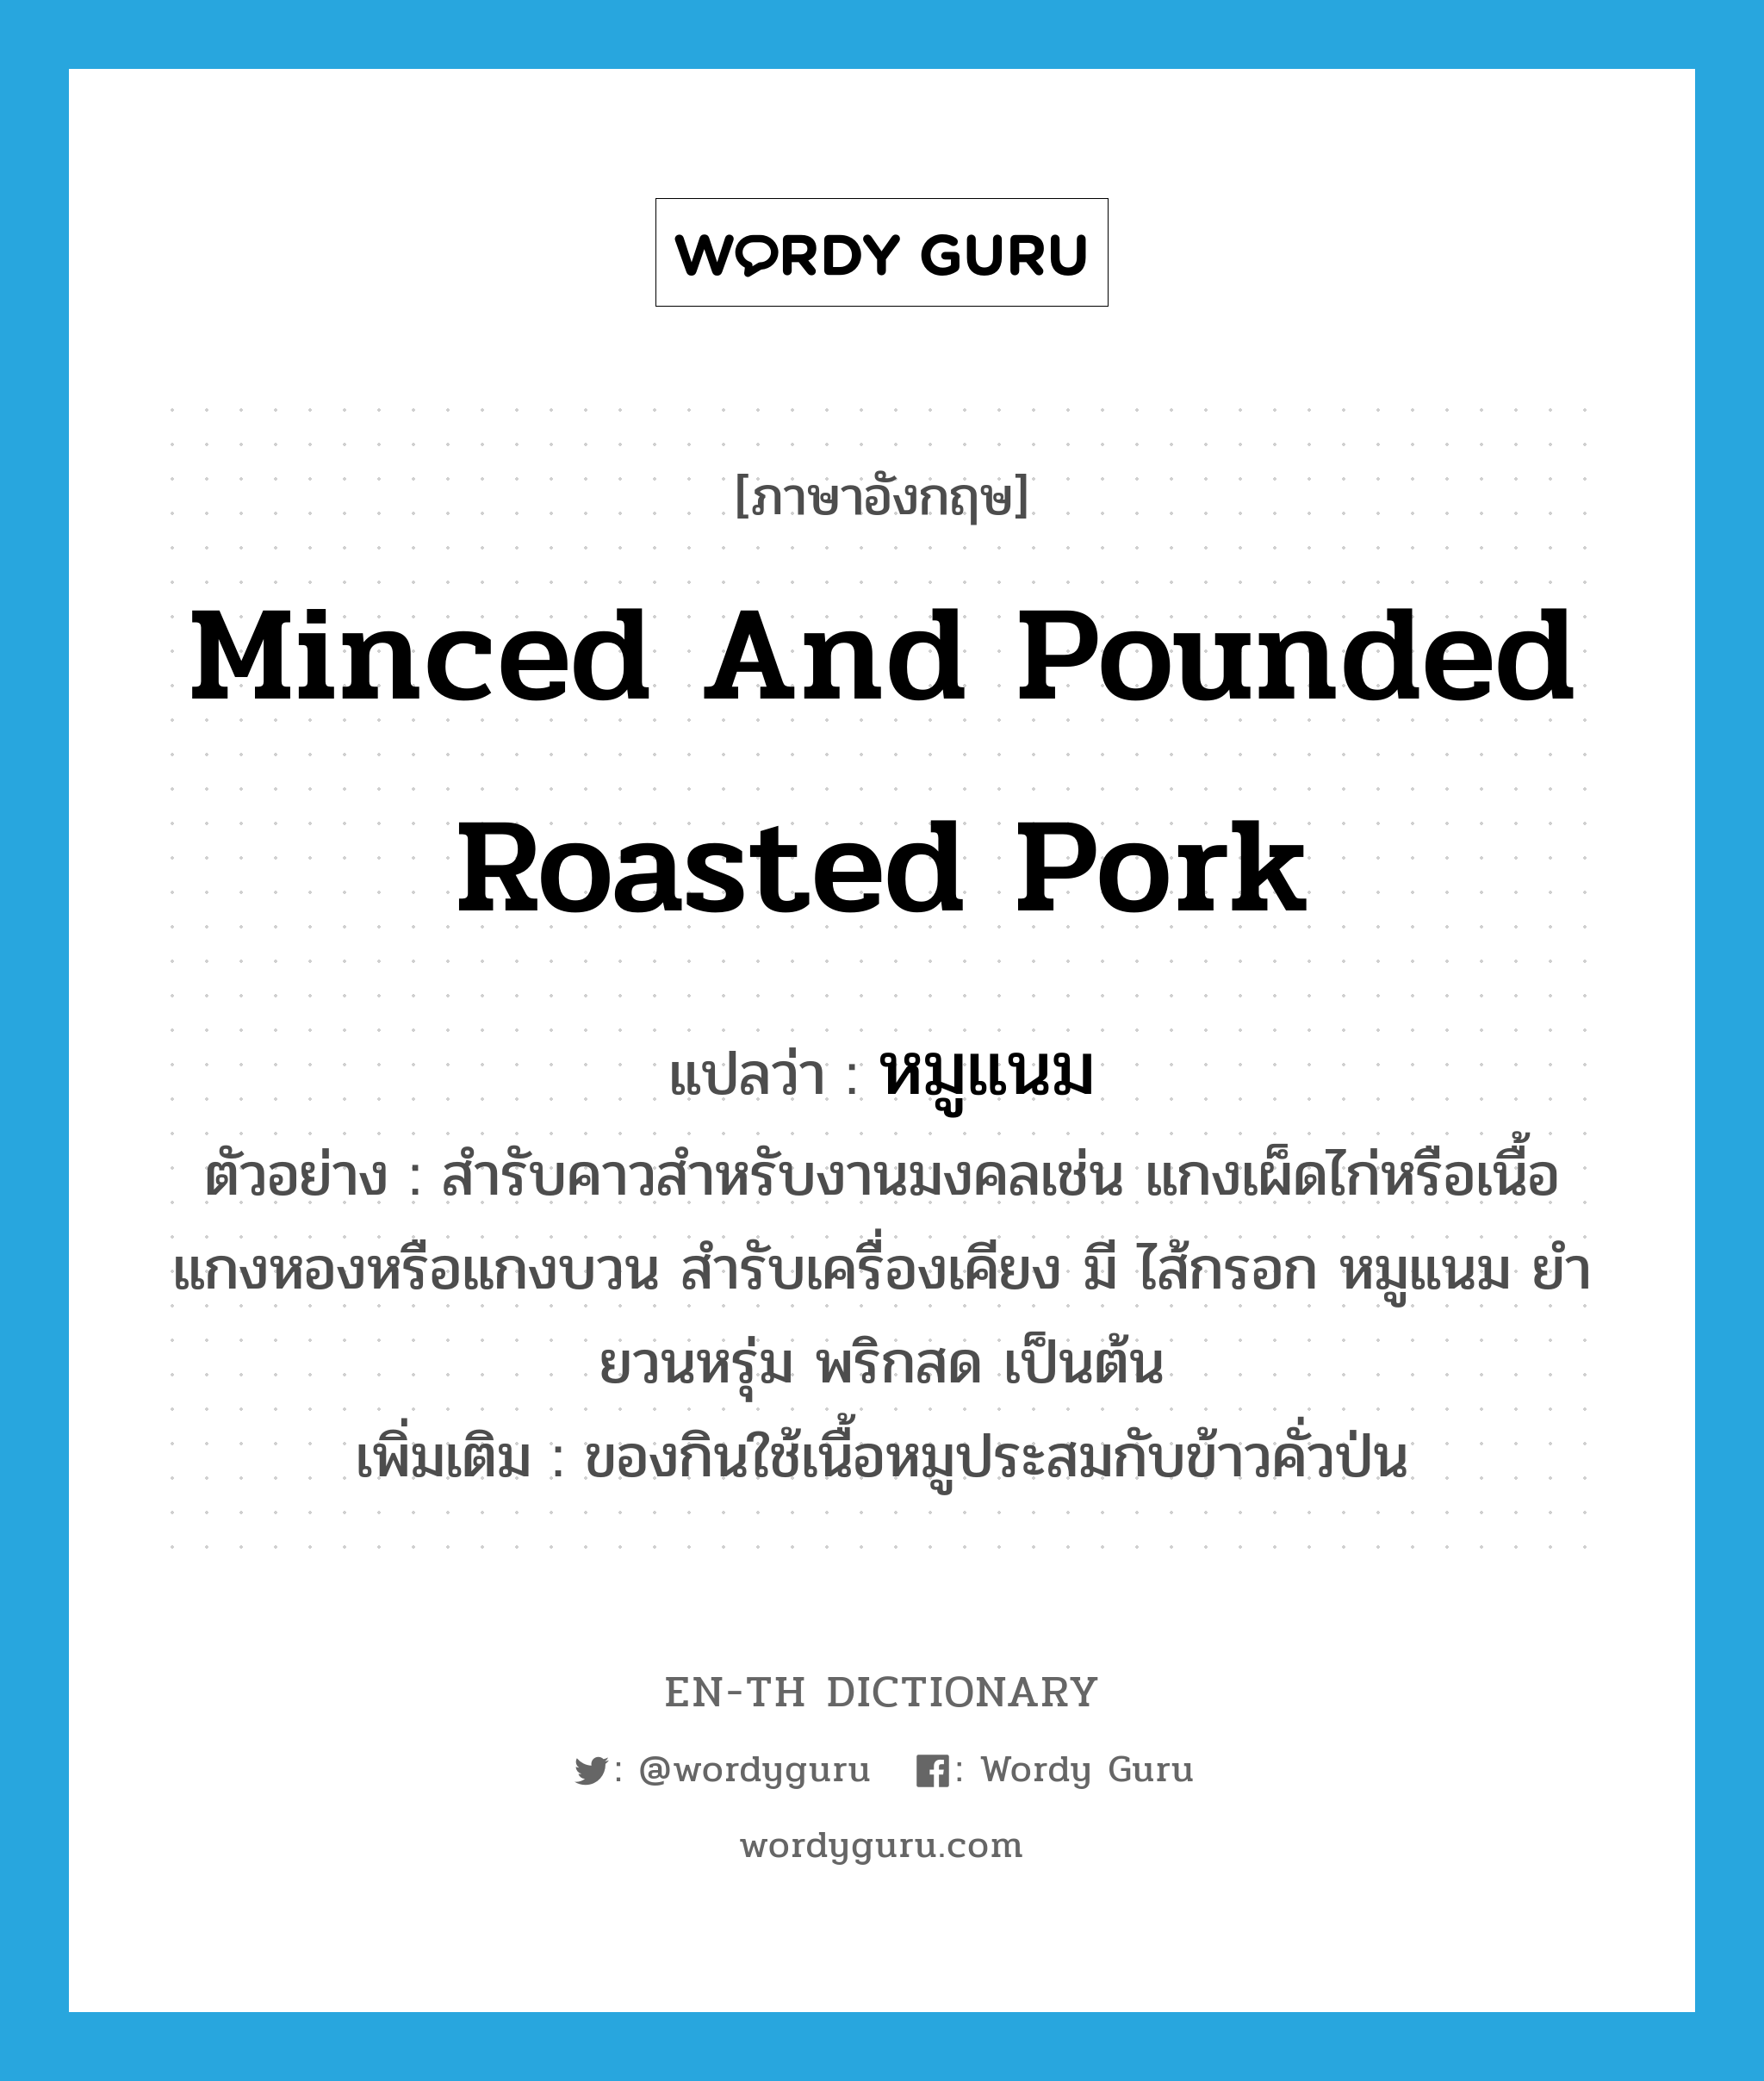 minced and pounded roasted pork แปลว่า?, คำศัพท์ภาษาอังกฤษ minced and pounded roasted pork แปลว่า หมูแนม ประเภท N ตัวอย่าง สำรับคาวสำหรับงานมงคลเช่น แกงเผ็ดไก่หรือเนื้อ แกงหองหรือแกงบวน สำรับเครื่องเคียง มี ไส้กรอก หมูแนม ยำยวนหรุ่ม พริกสด เป็นต้น เพิ่มเติม ของกินใช้เนื้อหมูประสมกับข้าวคั่วป่น หมวด N